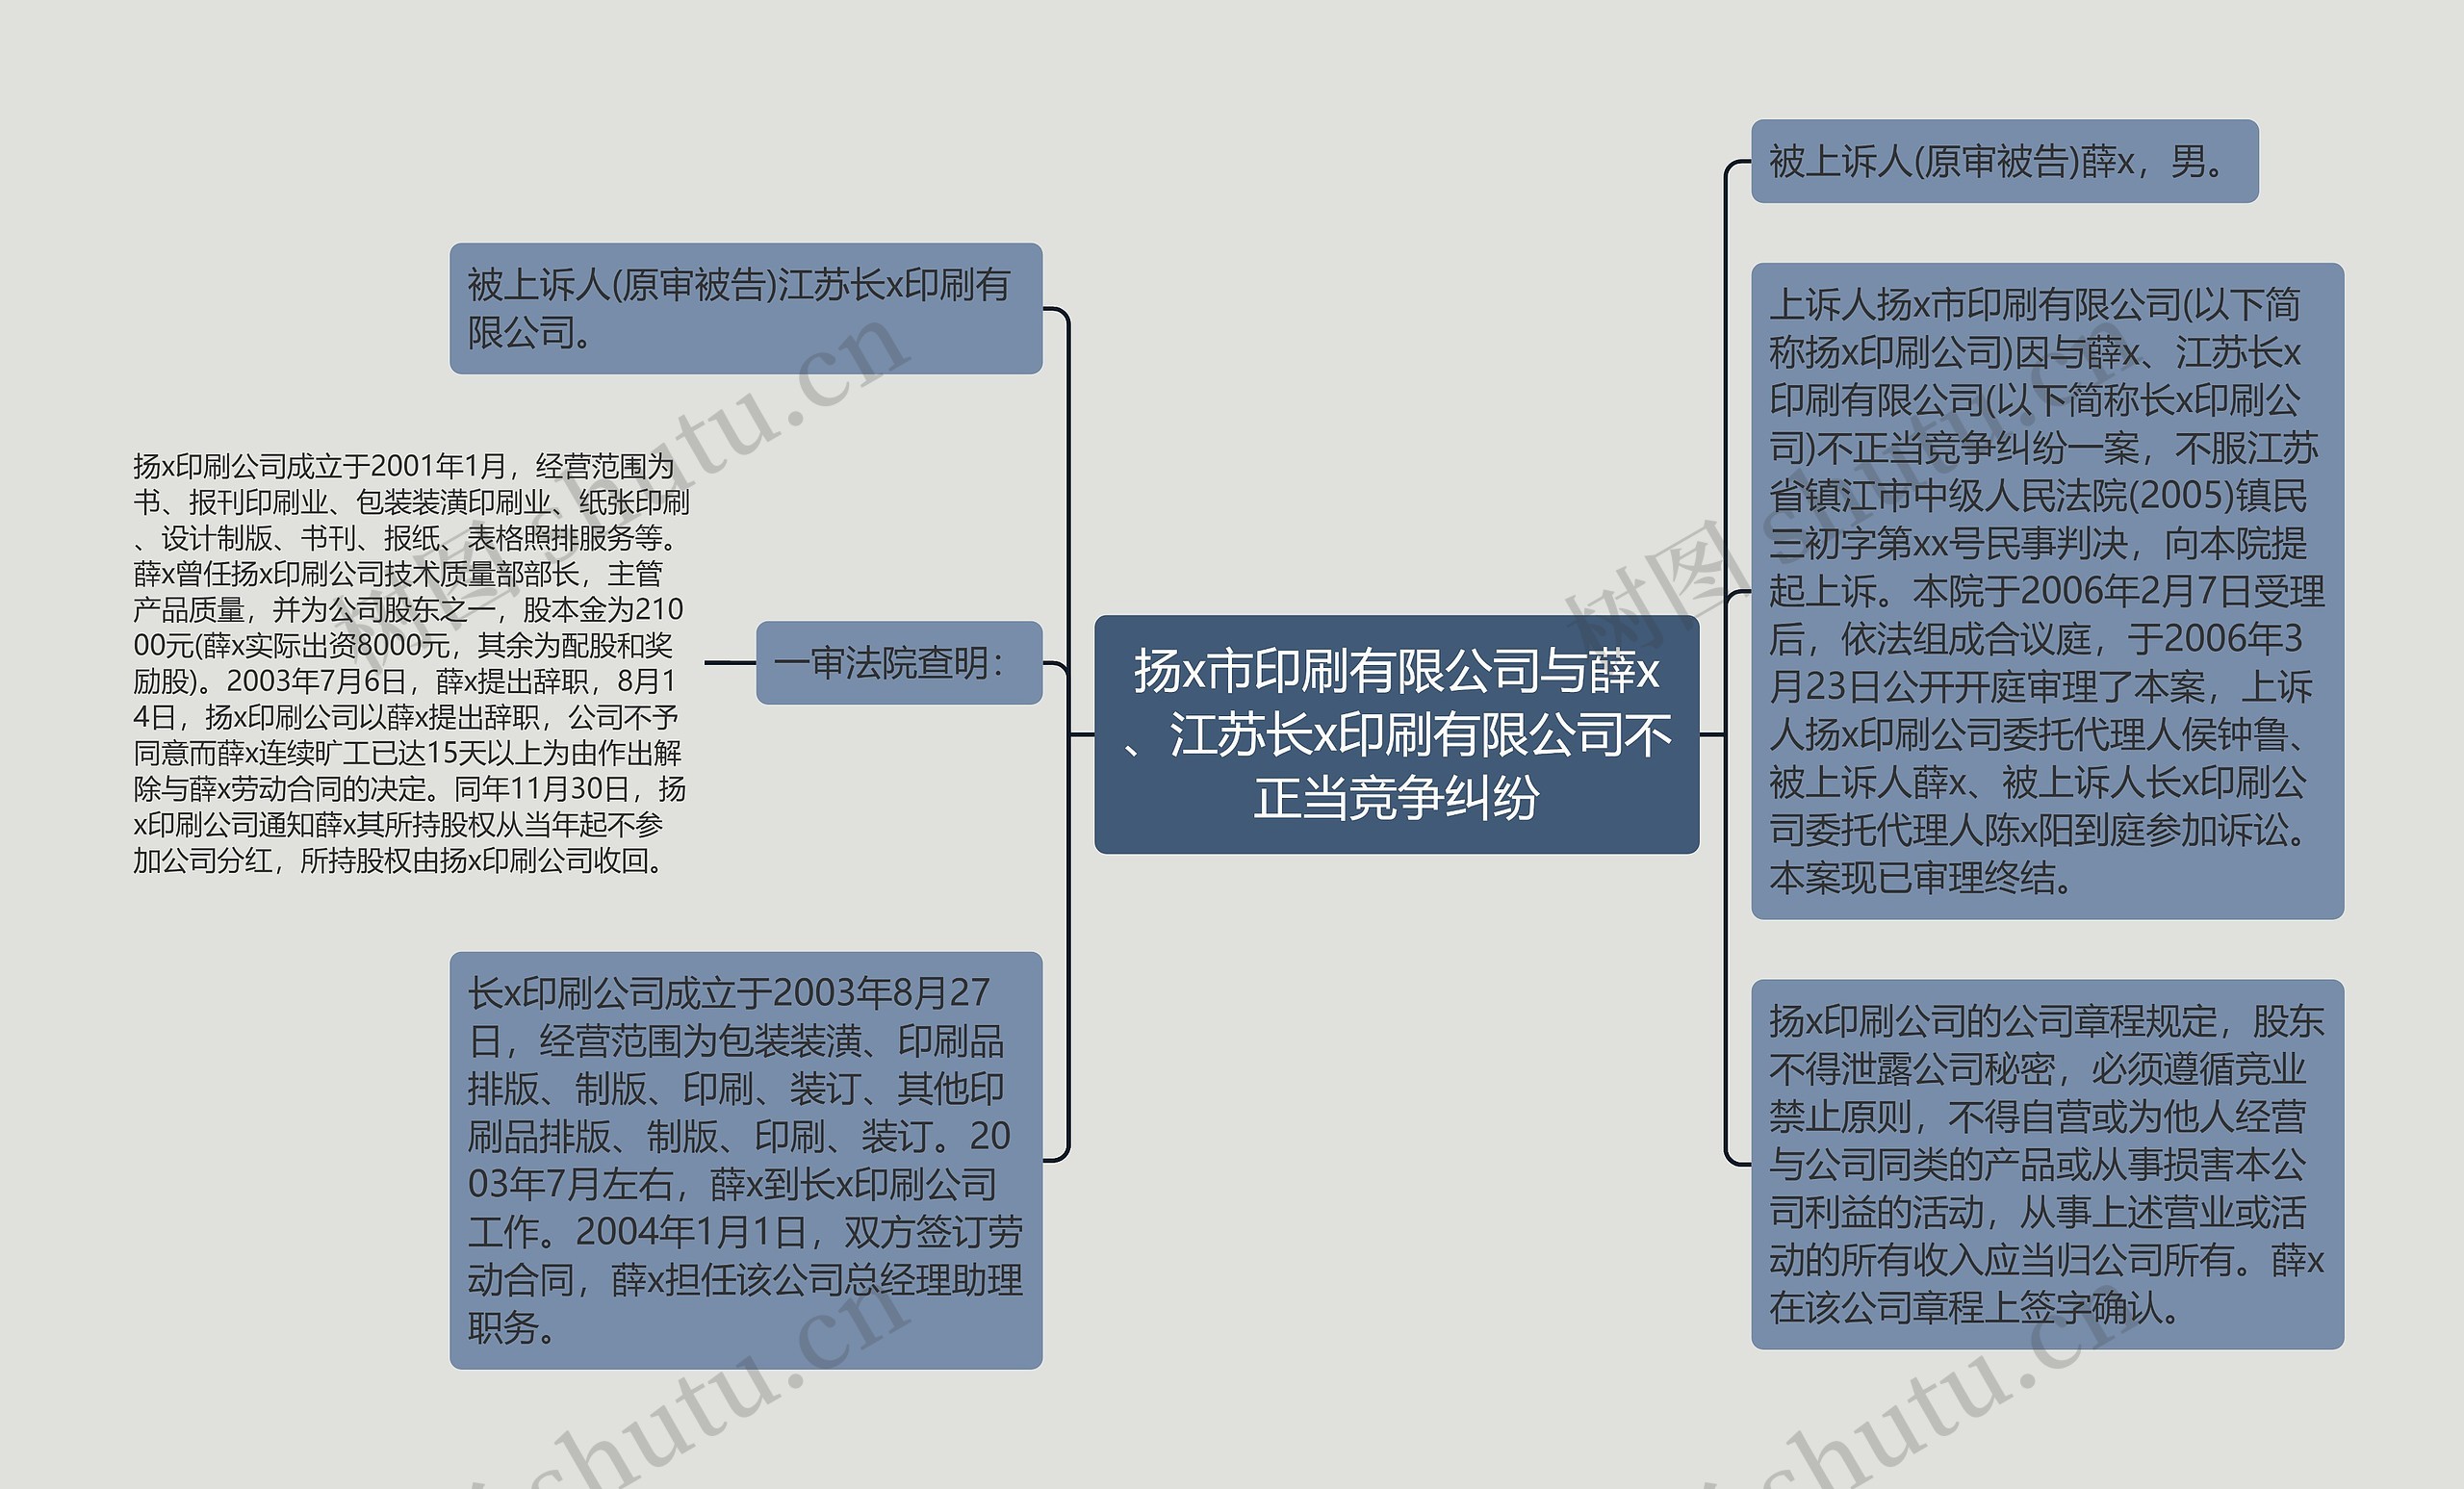 扬x市印刷有限公司与薛x、江苏长x印刷有限公司不正当竞争纠纷